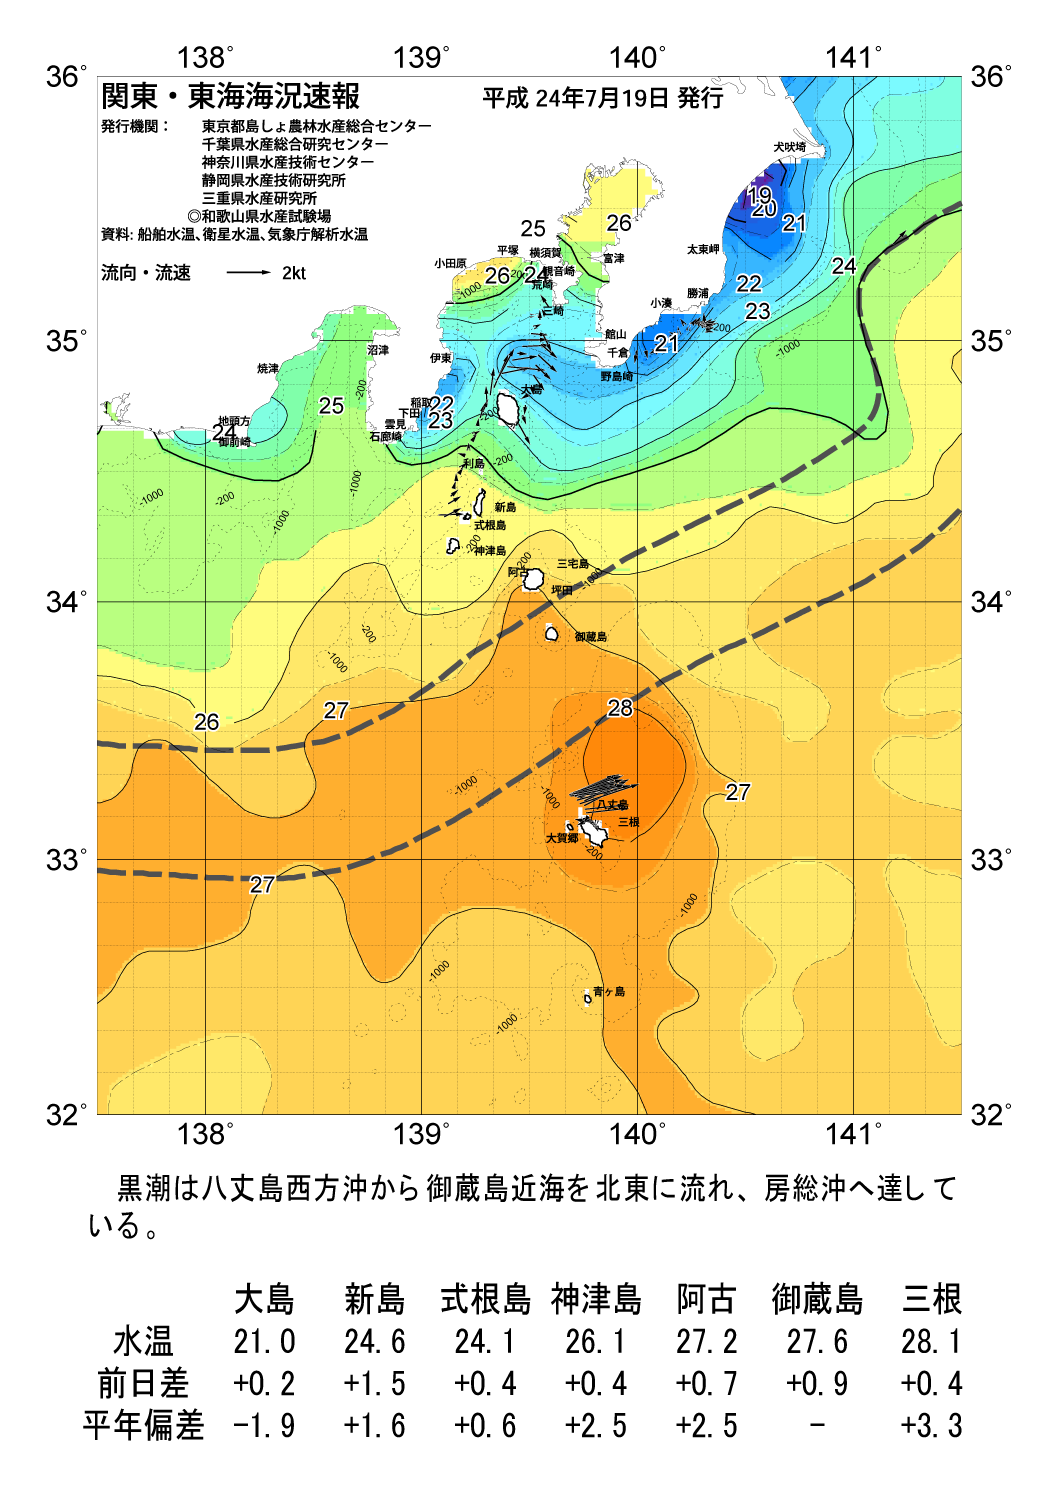 海の天気図2012年7月19日 東京都島しょ農林水産総合センター